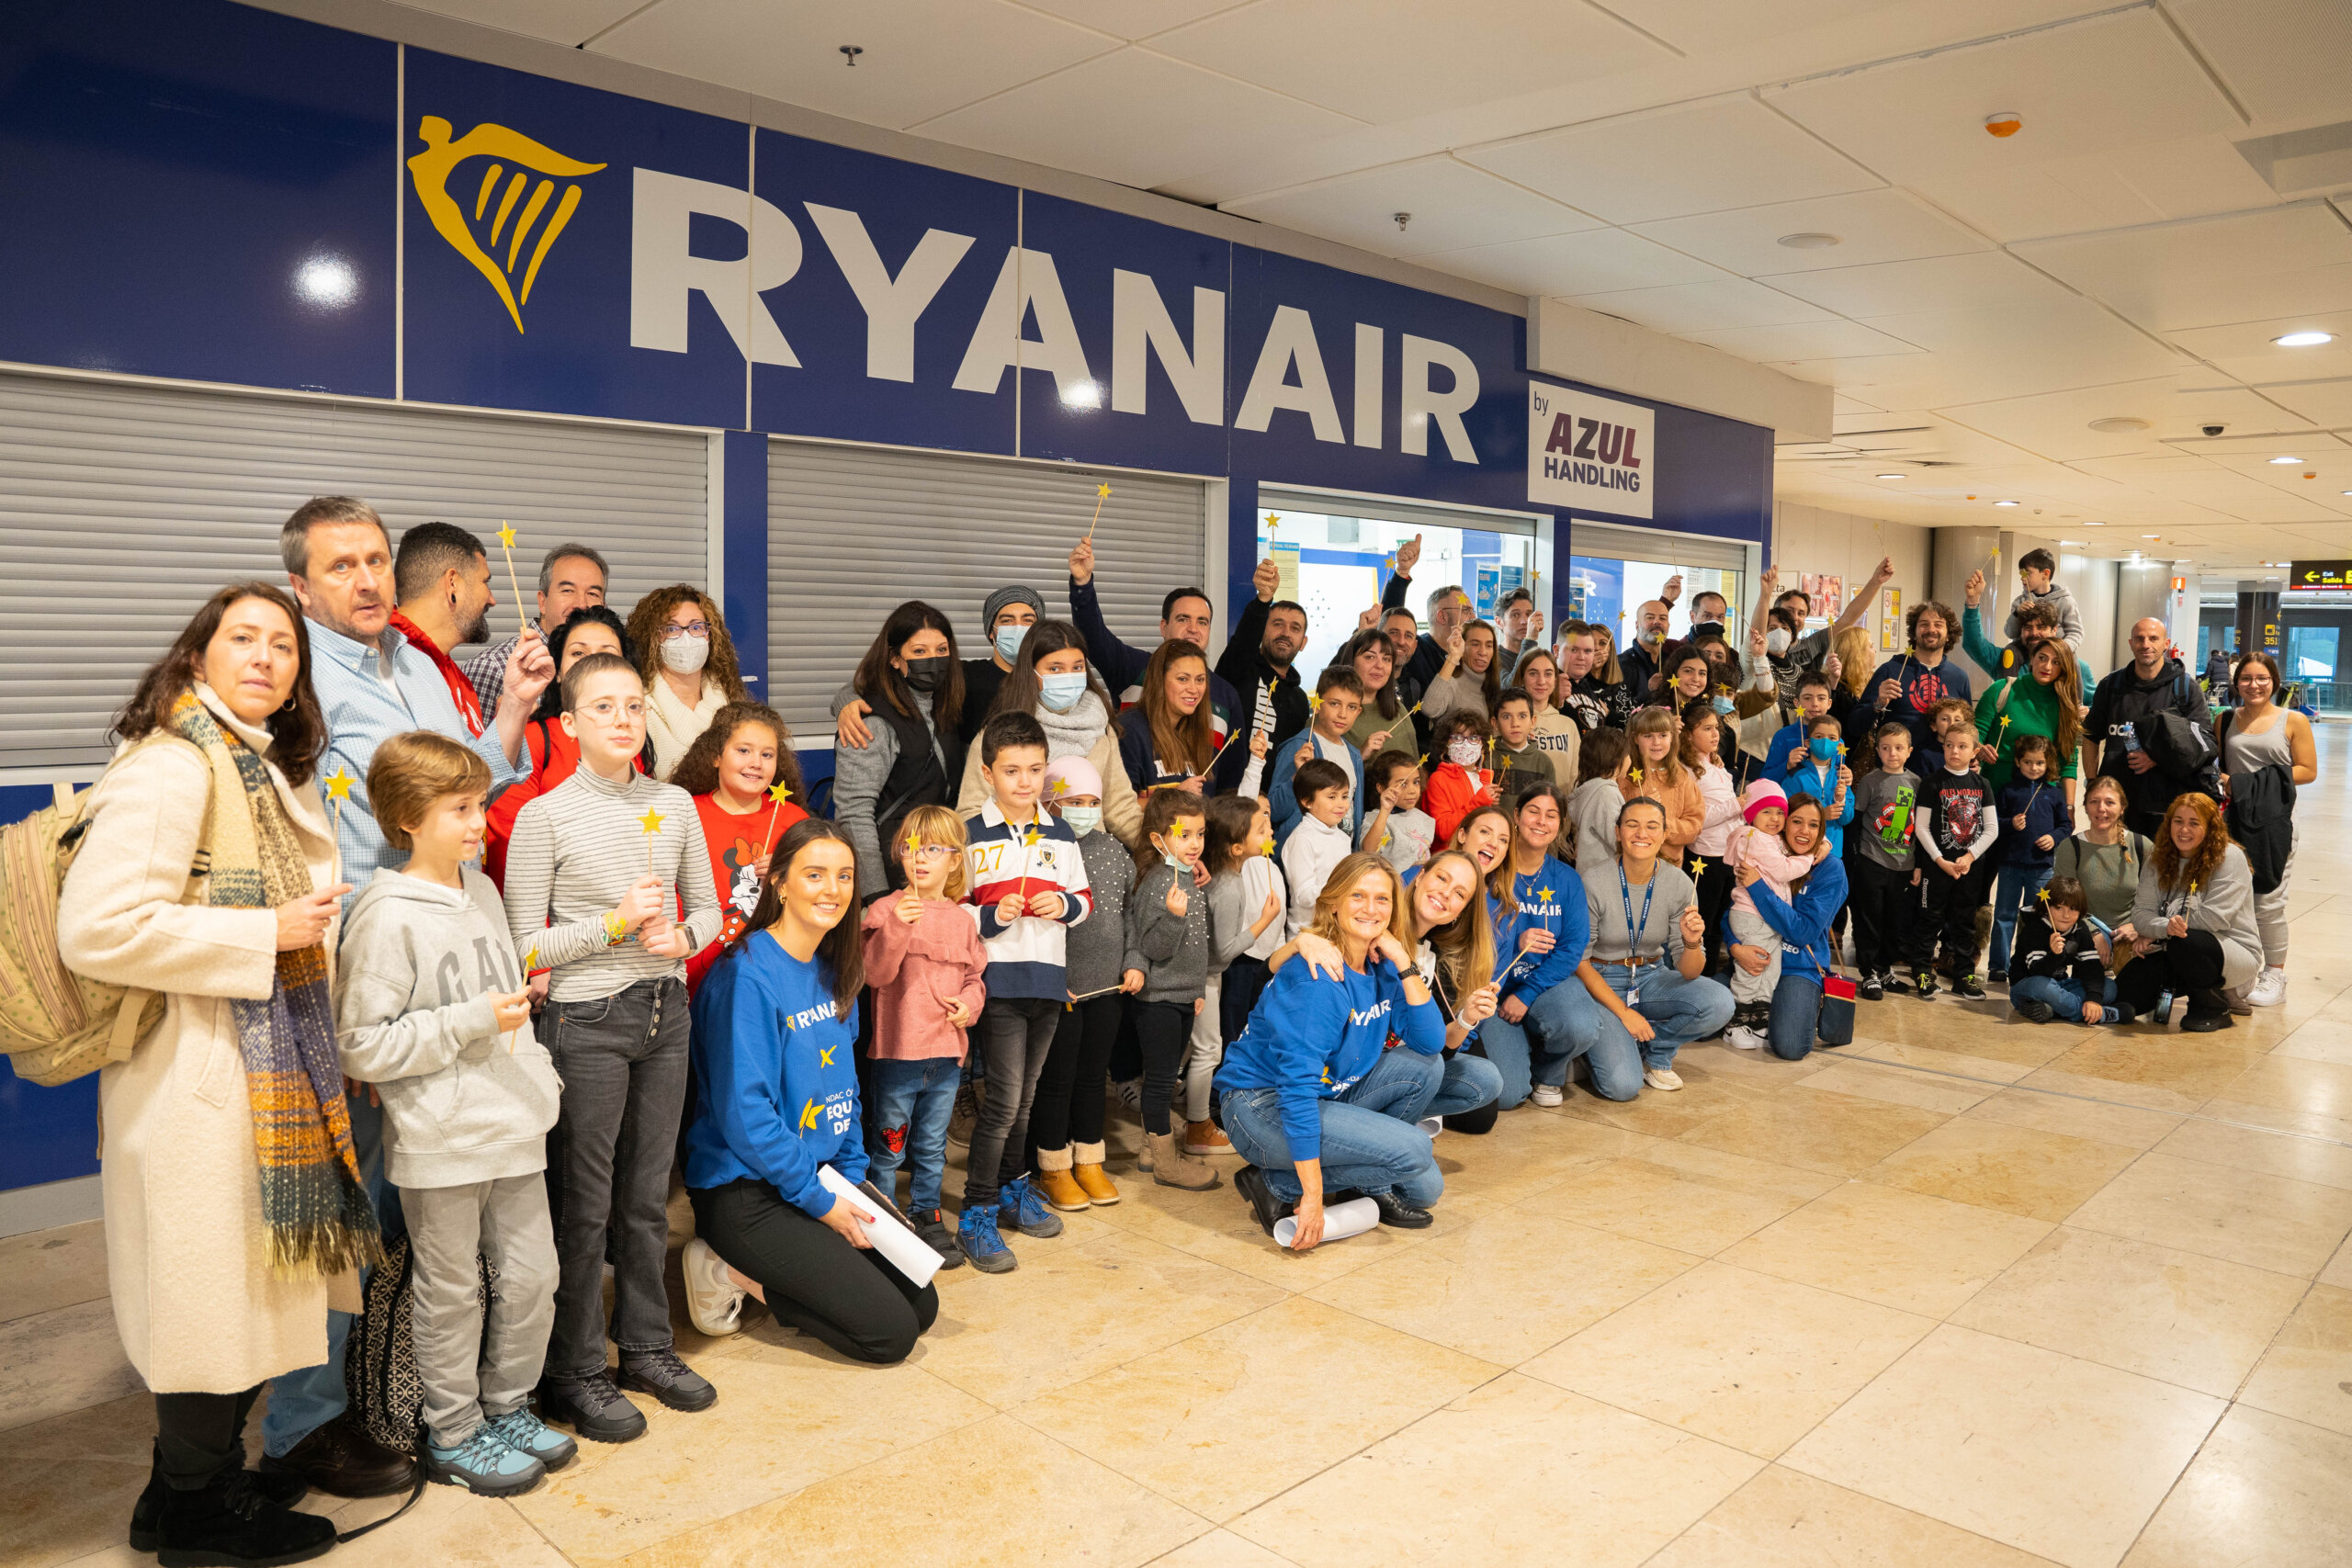 Pequeño Deseo Y Ryanair Celebran 10 Años De Colaboración Con Un Viaje A Disneyland París Para 18 Familias De La Fundación 